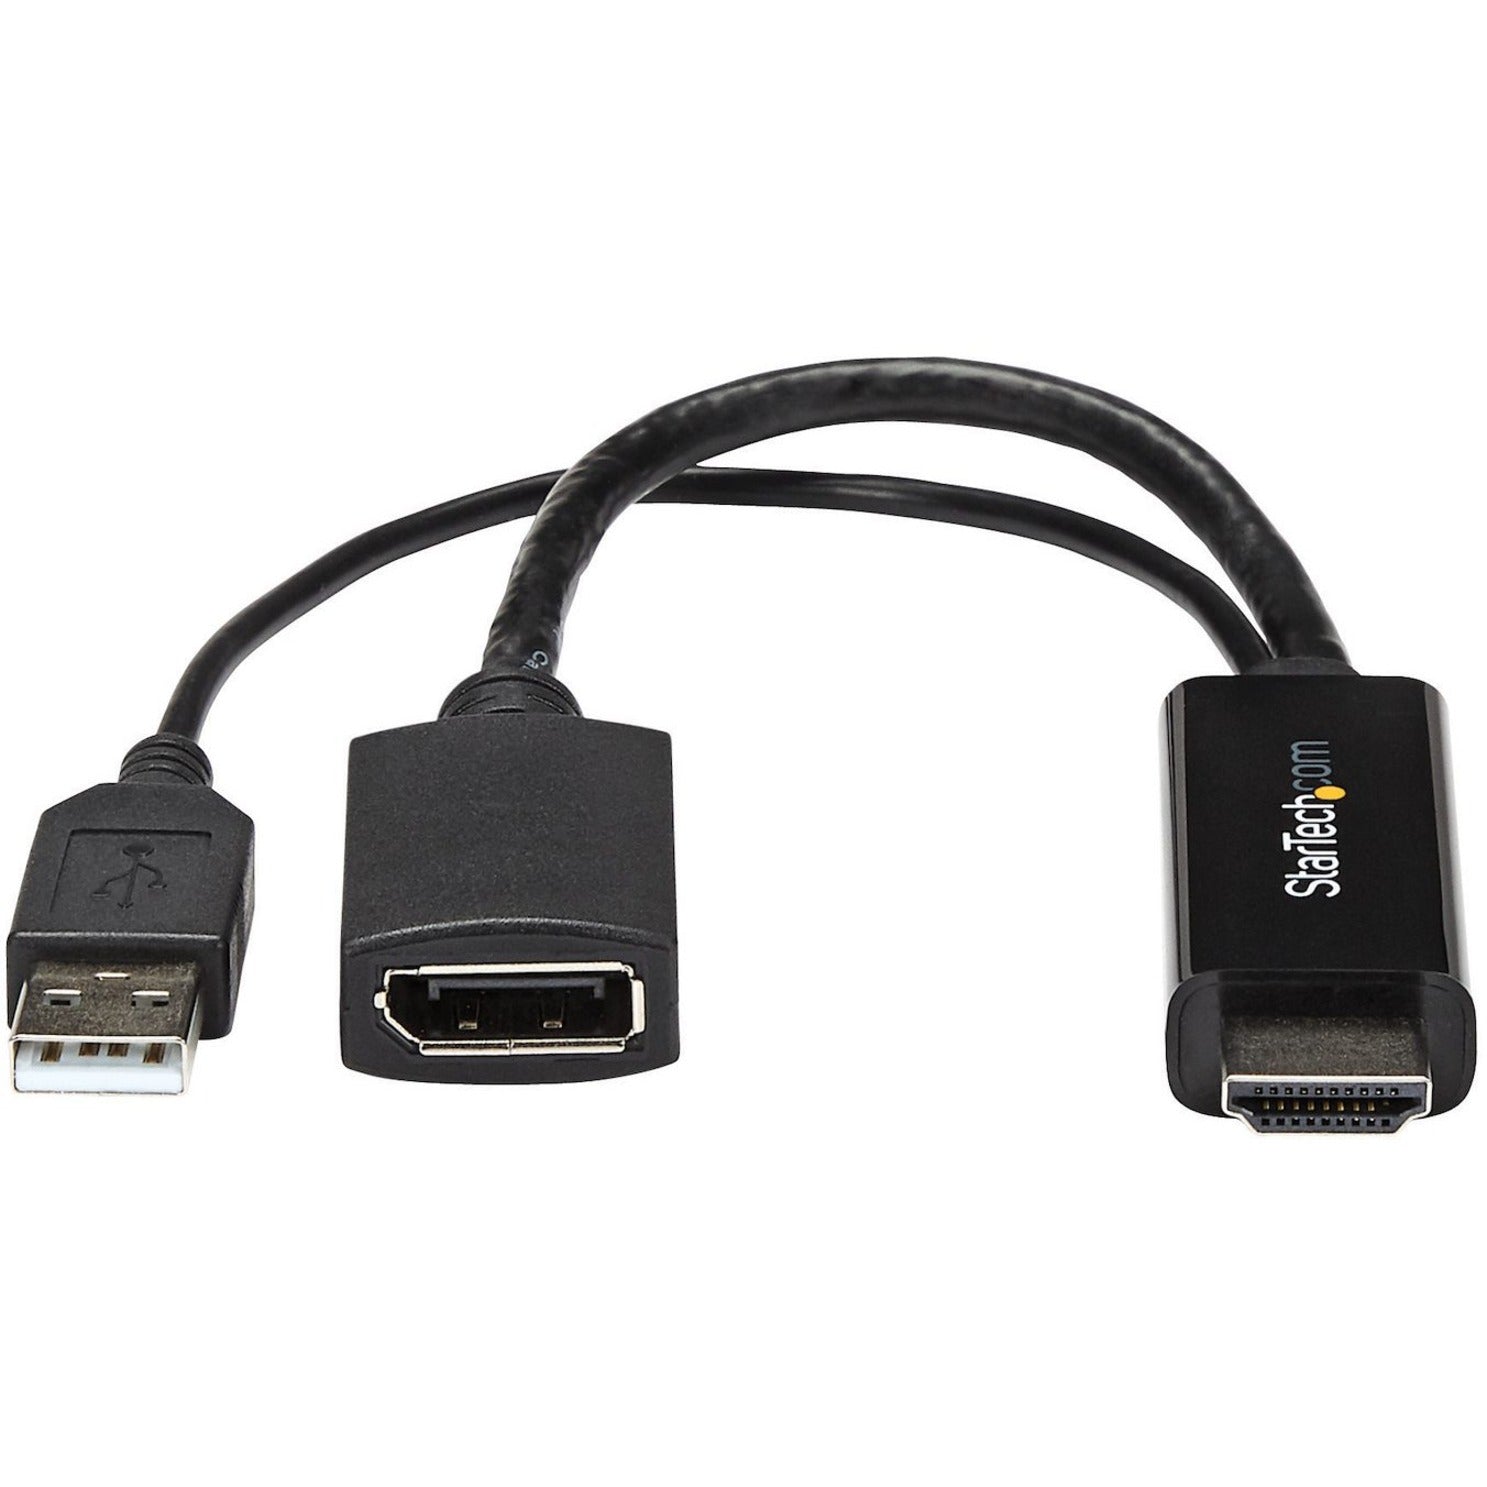 Convertidor HDMI a DisplayPort de StarTech.com - Adaptador de HDMI a DP con Alimentación USB - 4K Adaptador de Video Plug-and-Play Fácil